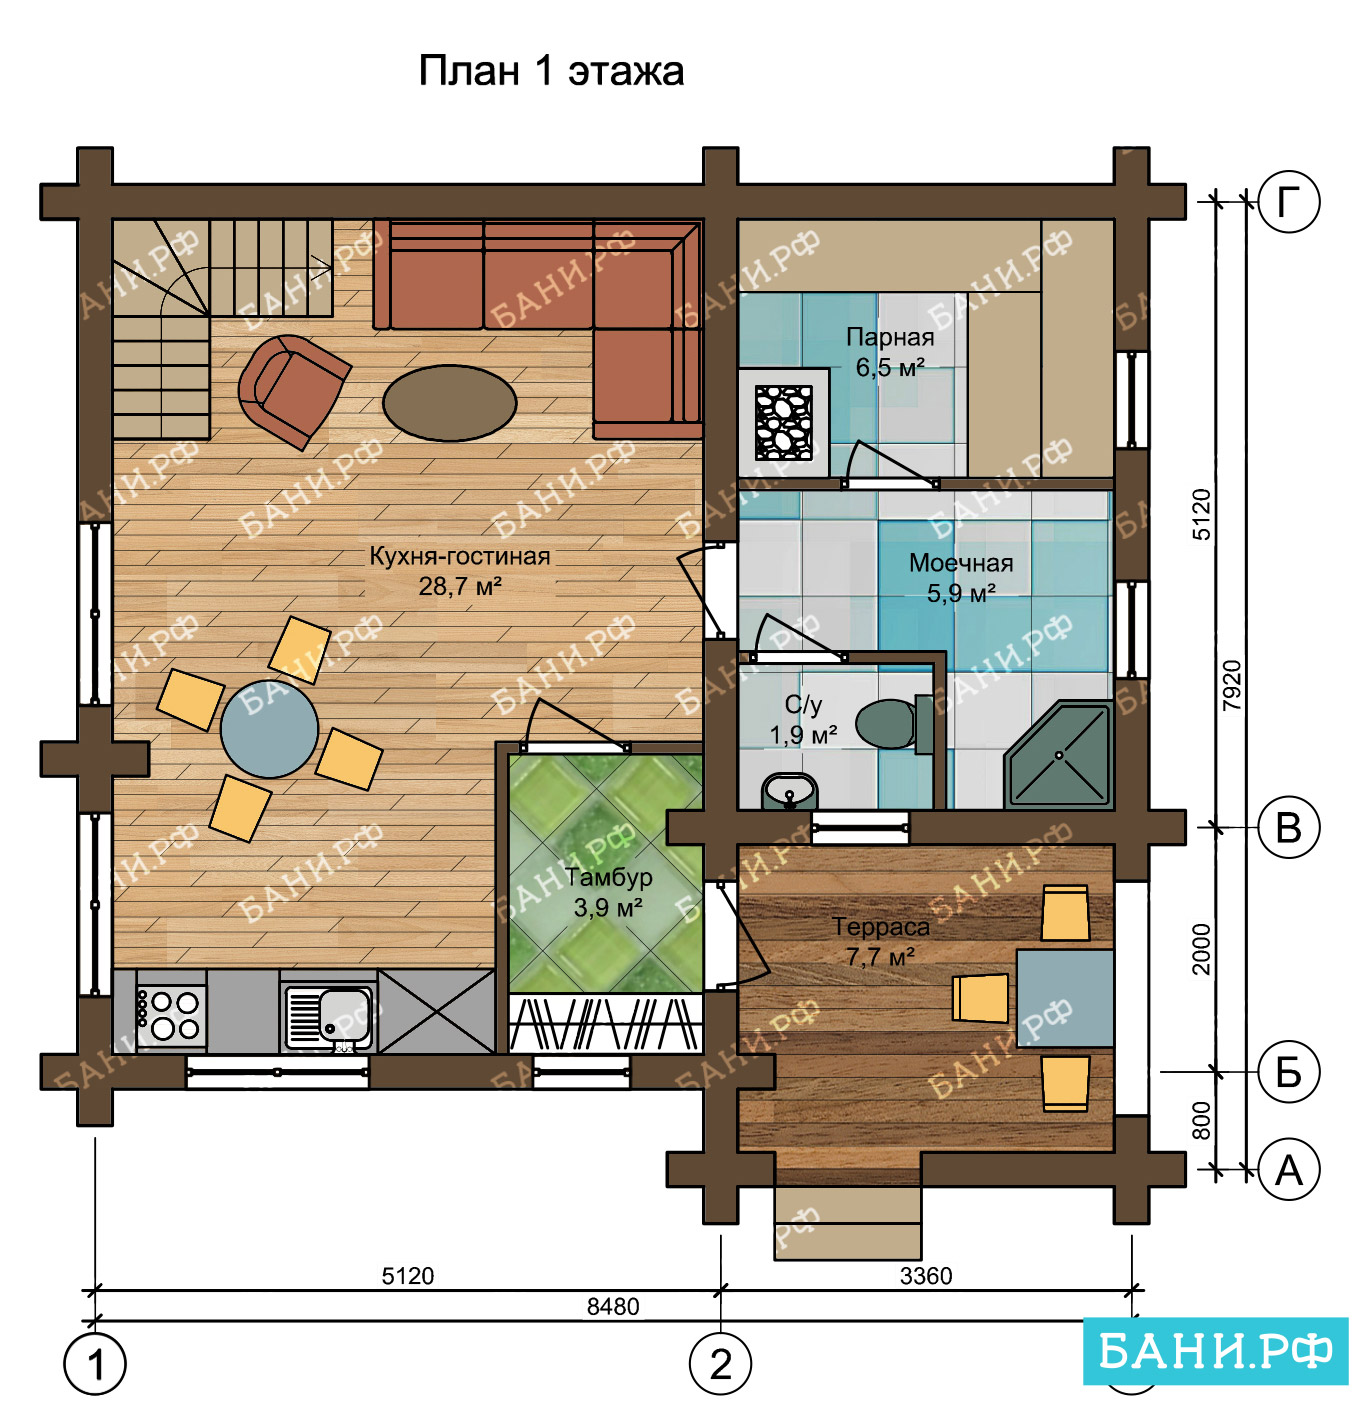 Проекты бань с комнатой отдыха (71 фото): план бани с террасой и туалетом, планировка одноэтажной бани со спальней и кухней, размеры бани с зоной отдыха, идеи дизайна